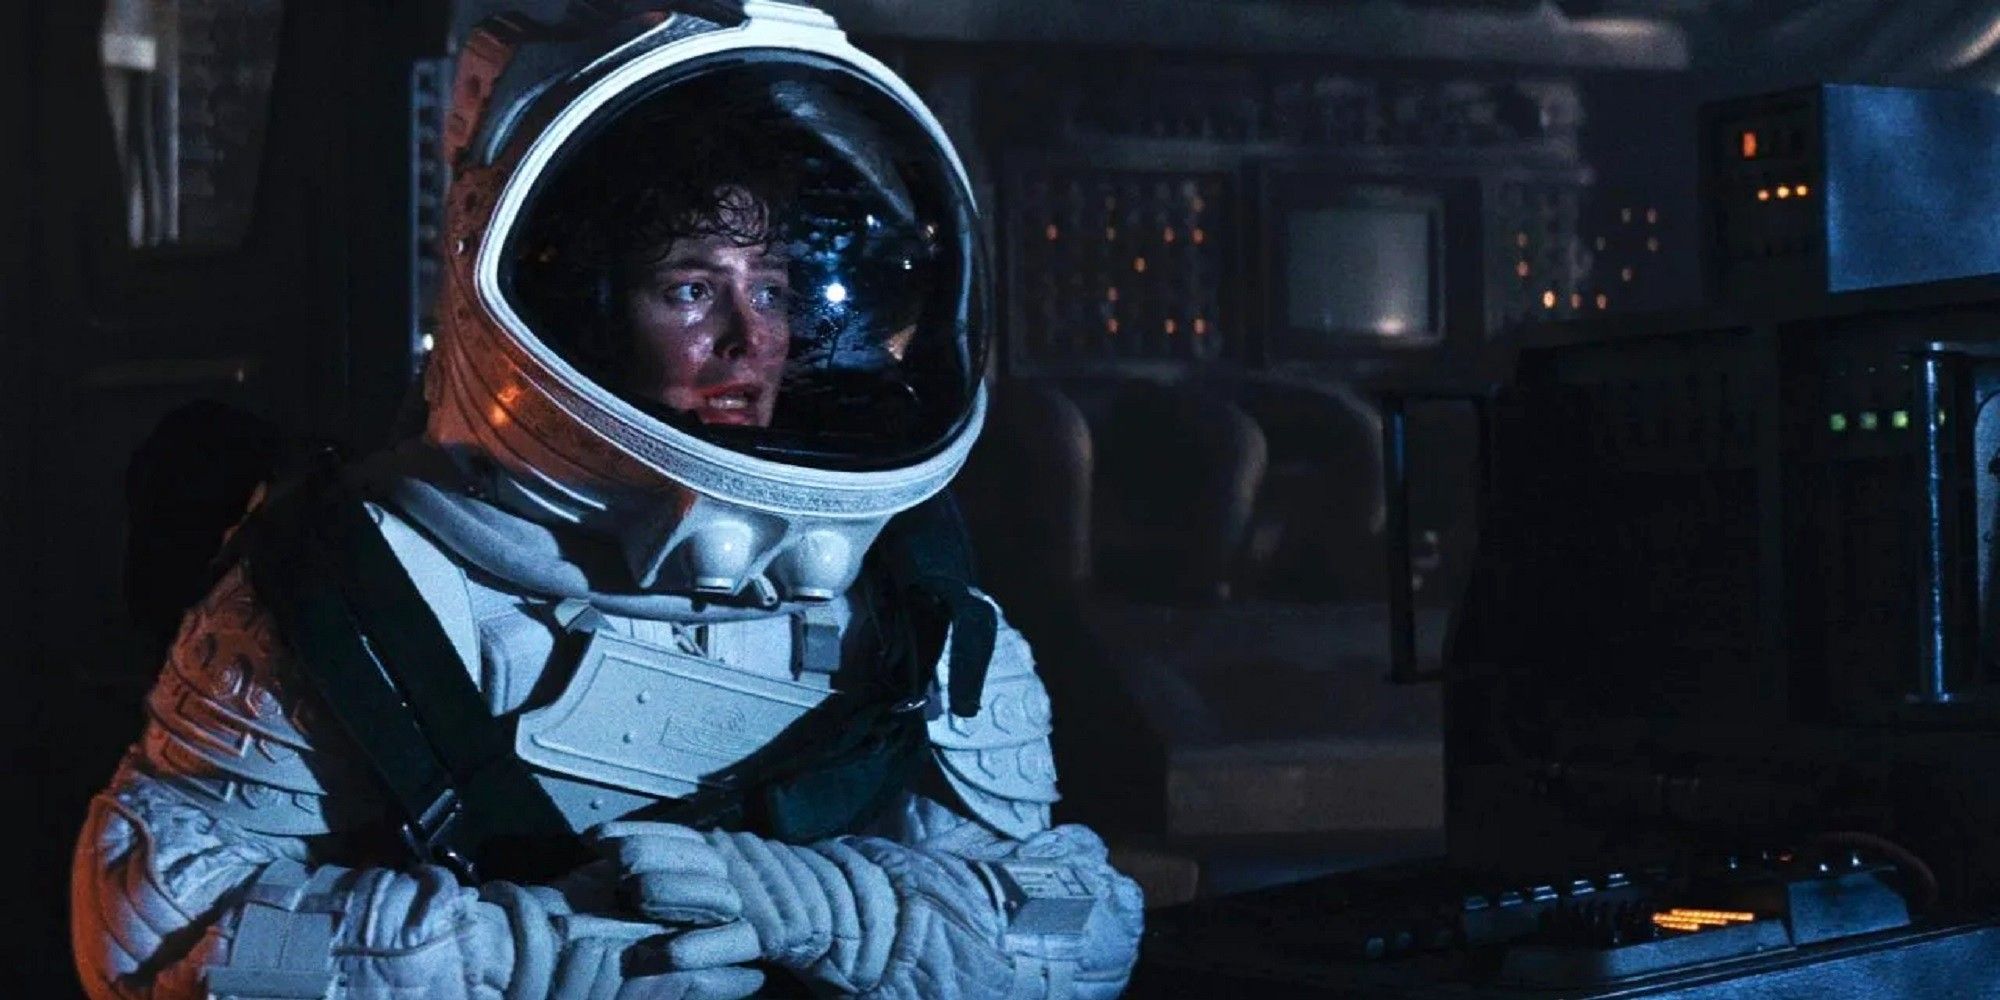 Alien - Ellen Ripley in an astronaut suit sitting down